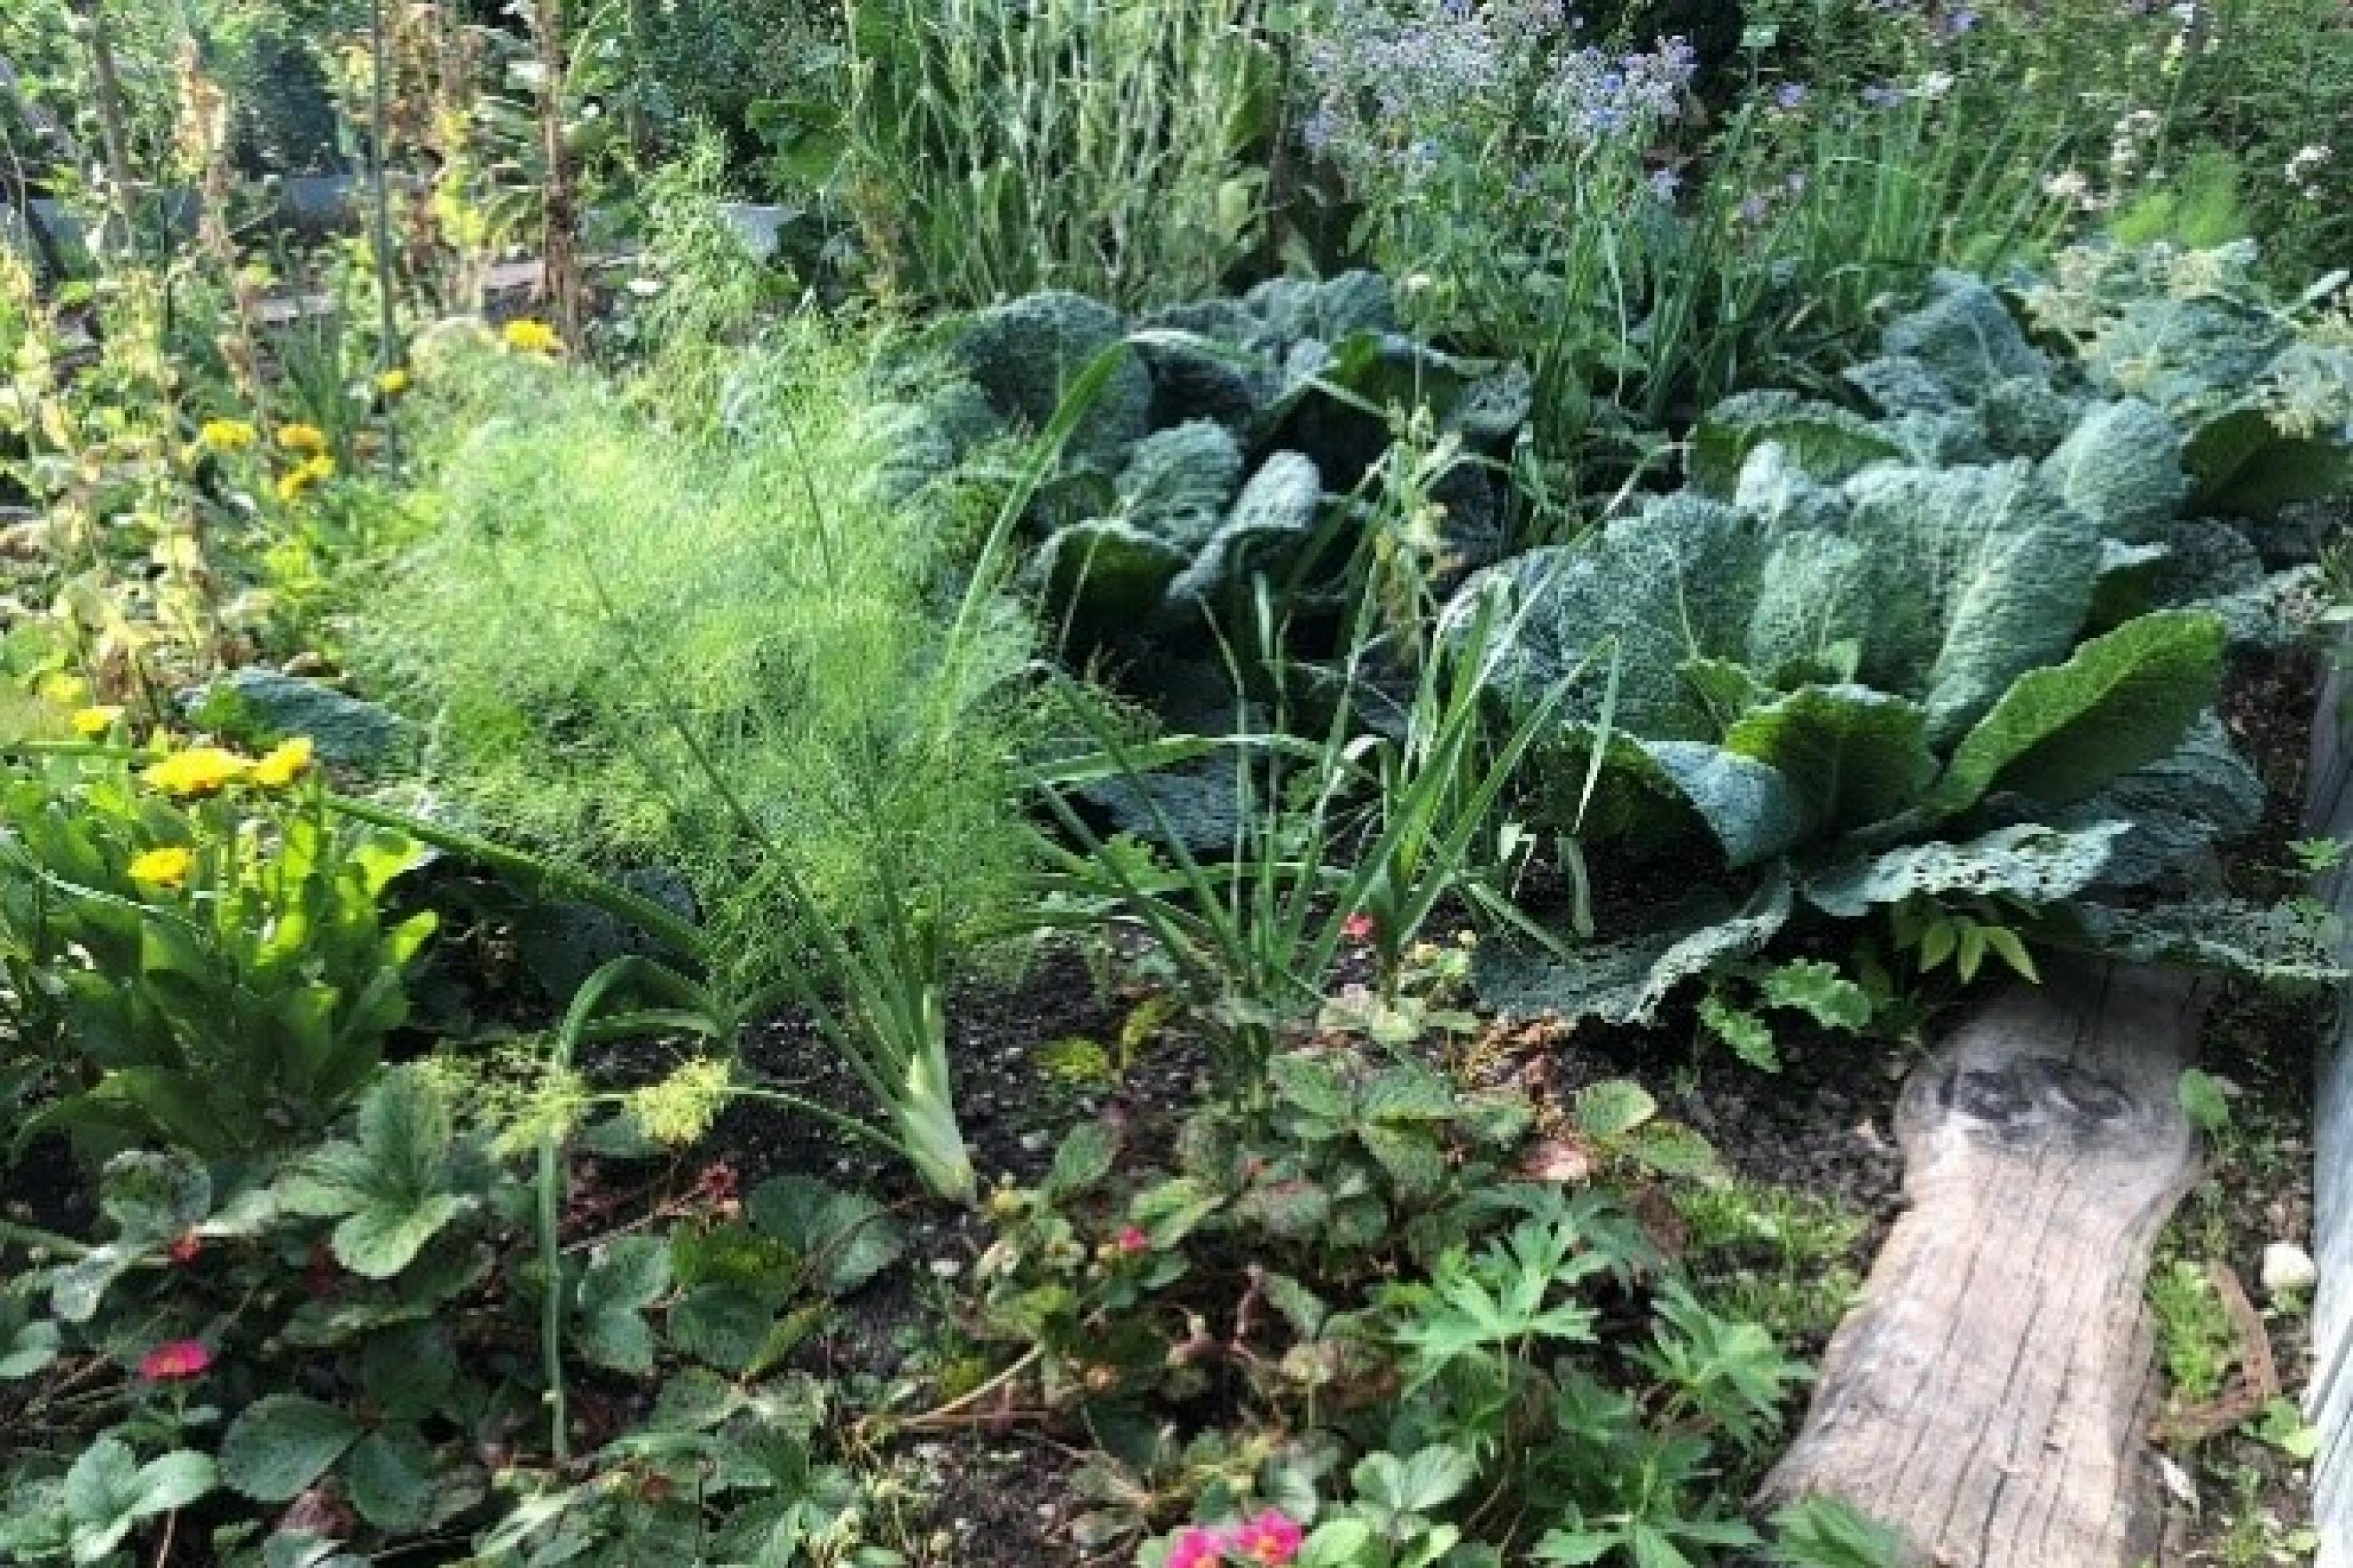 Der Botanische Garten in Augsburg zeigt im Naturgarten ökologischen Gemüseanbau, gedüngt wird mit Kompost aus Bioabfällen. Auf dem Bild sind verschiedene Pflanzen zu sehen, das Beet wird durch ein Trittbrett unterteilt. Das Bild wurde im August 2020 aufgenommen.